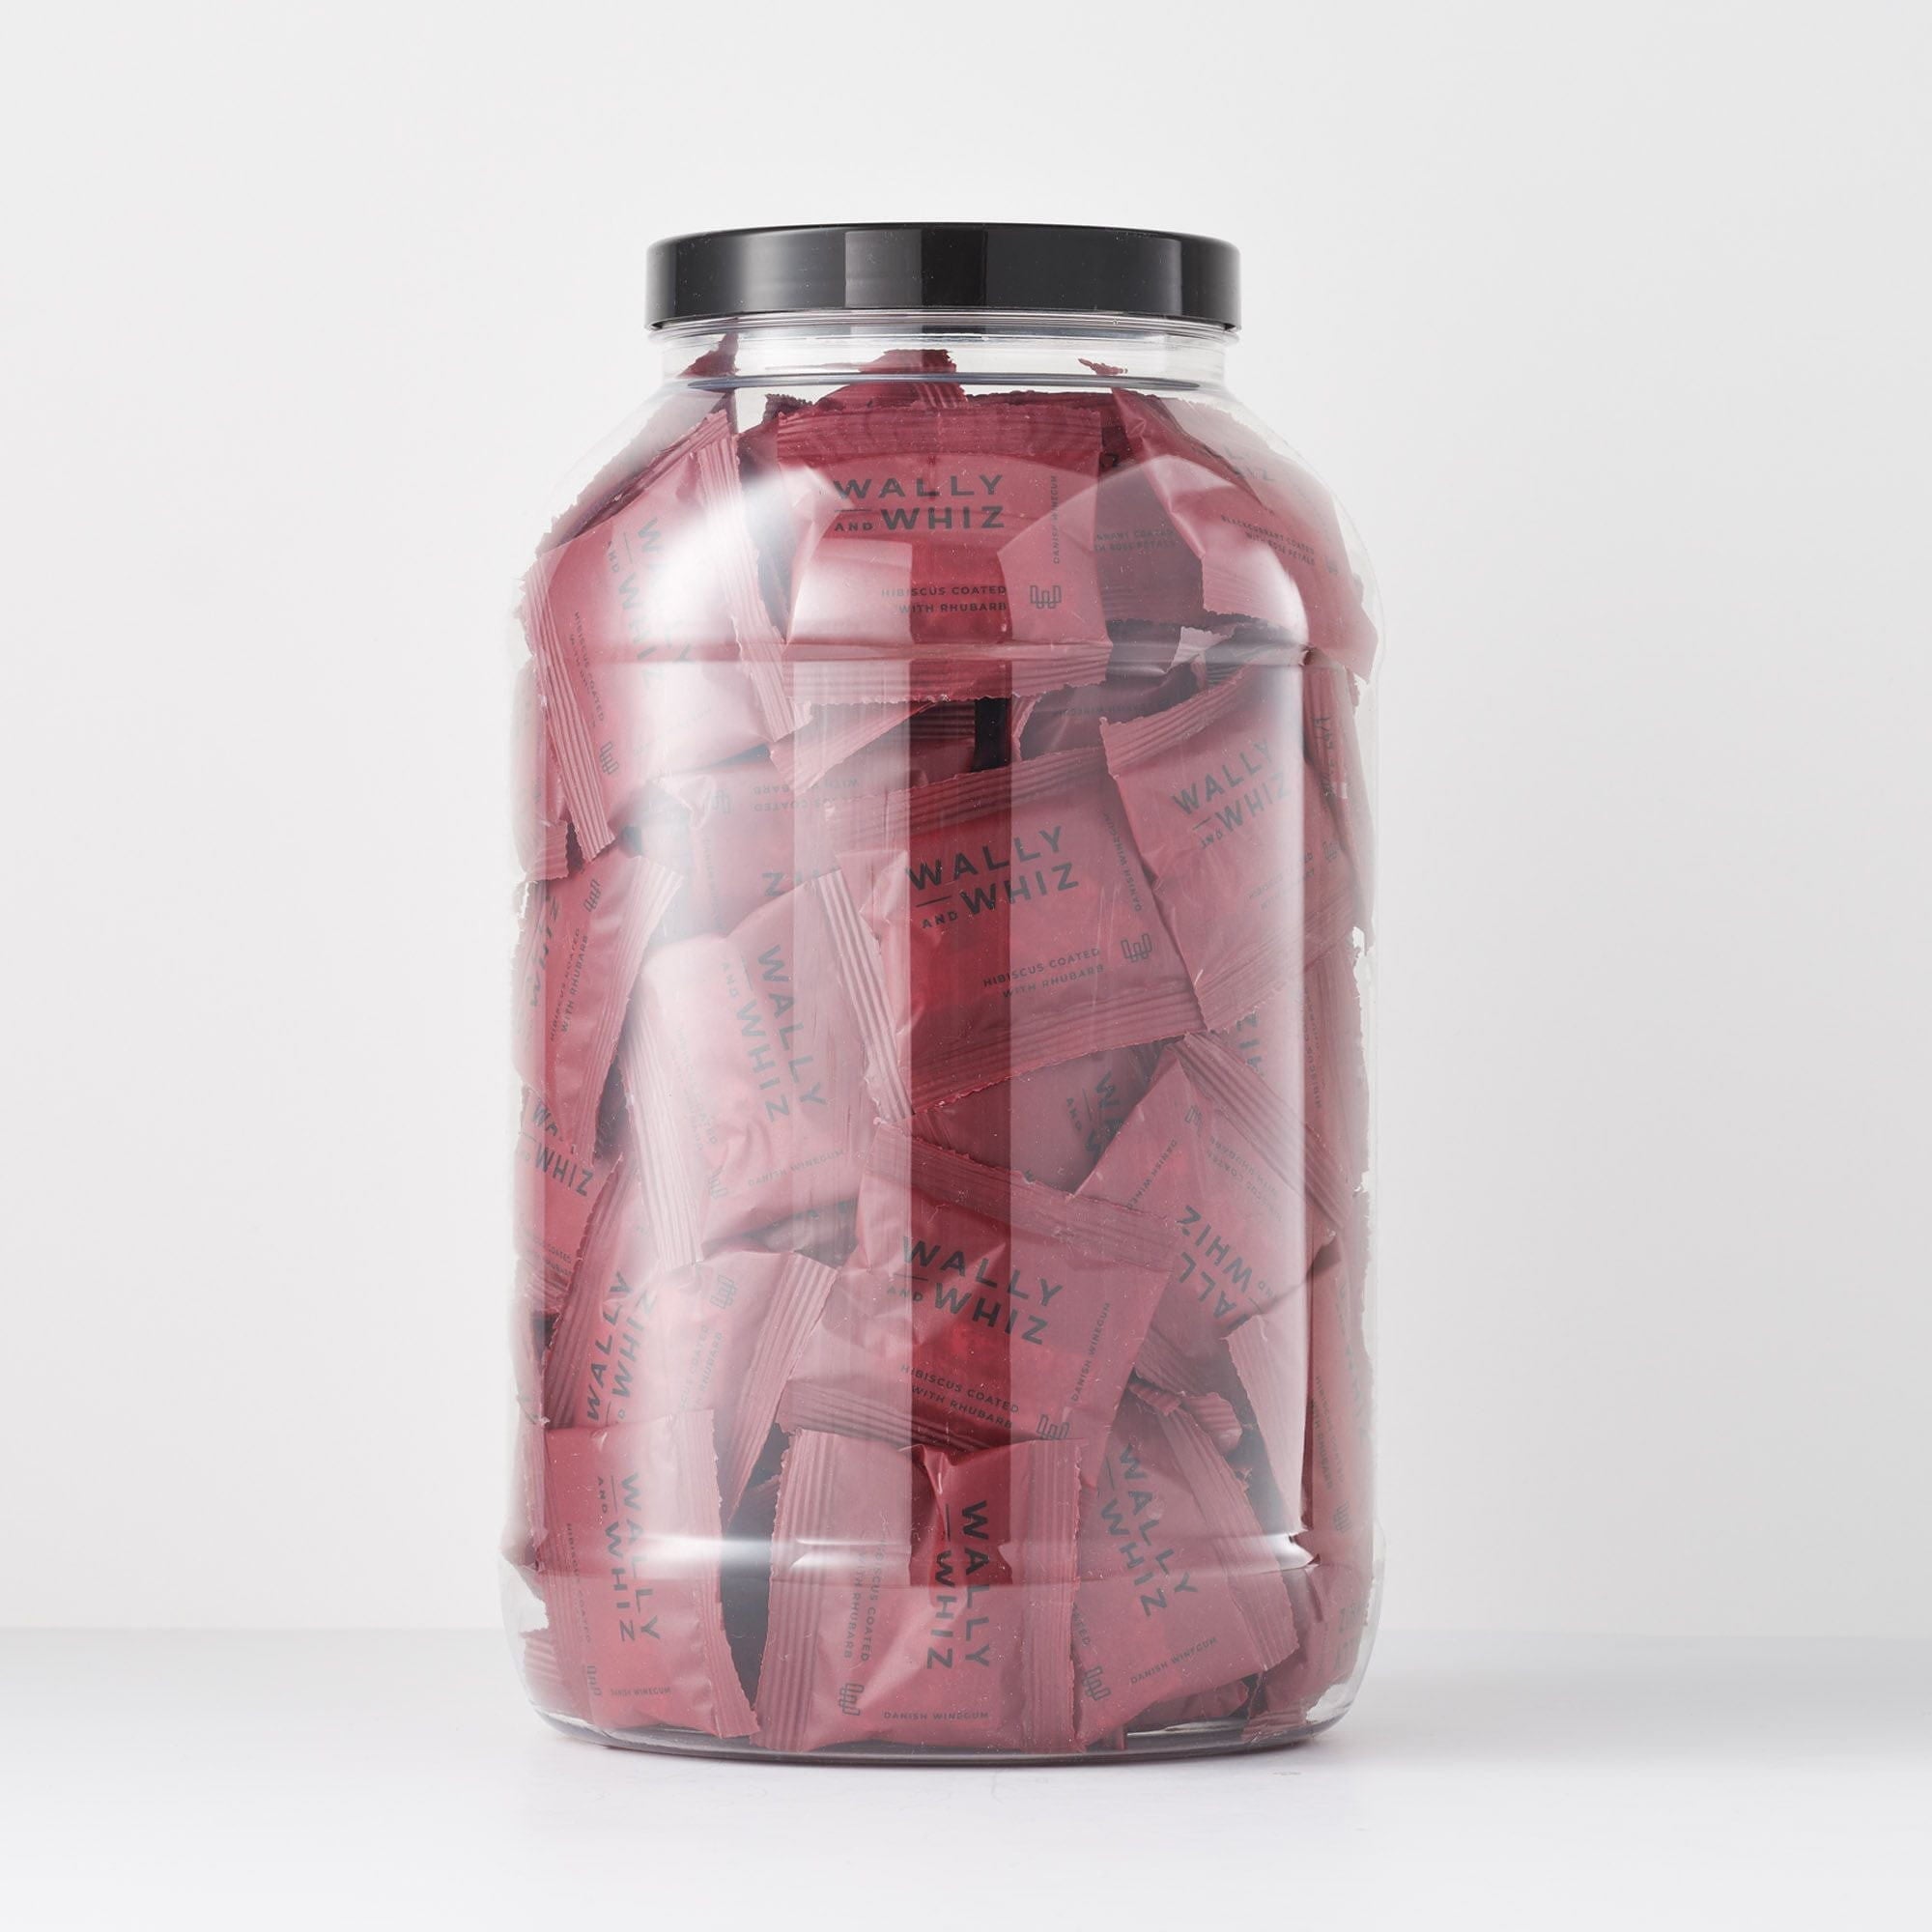 Pot Wally et Whiz Wine Gum avec 125 flowpacks, hibiscus avec rhubarbe